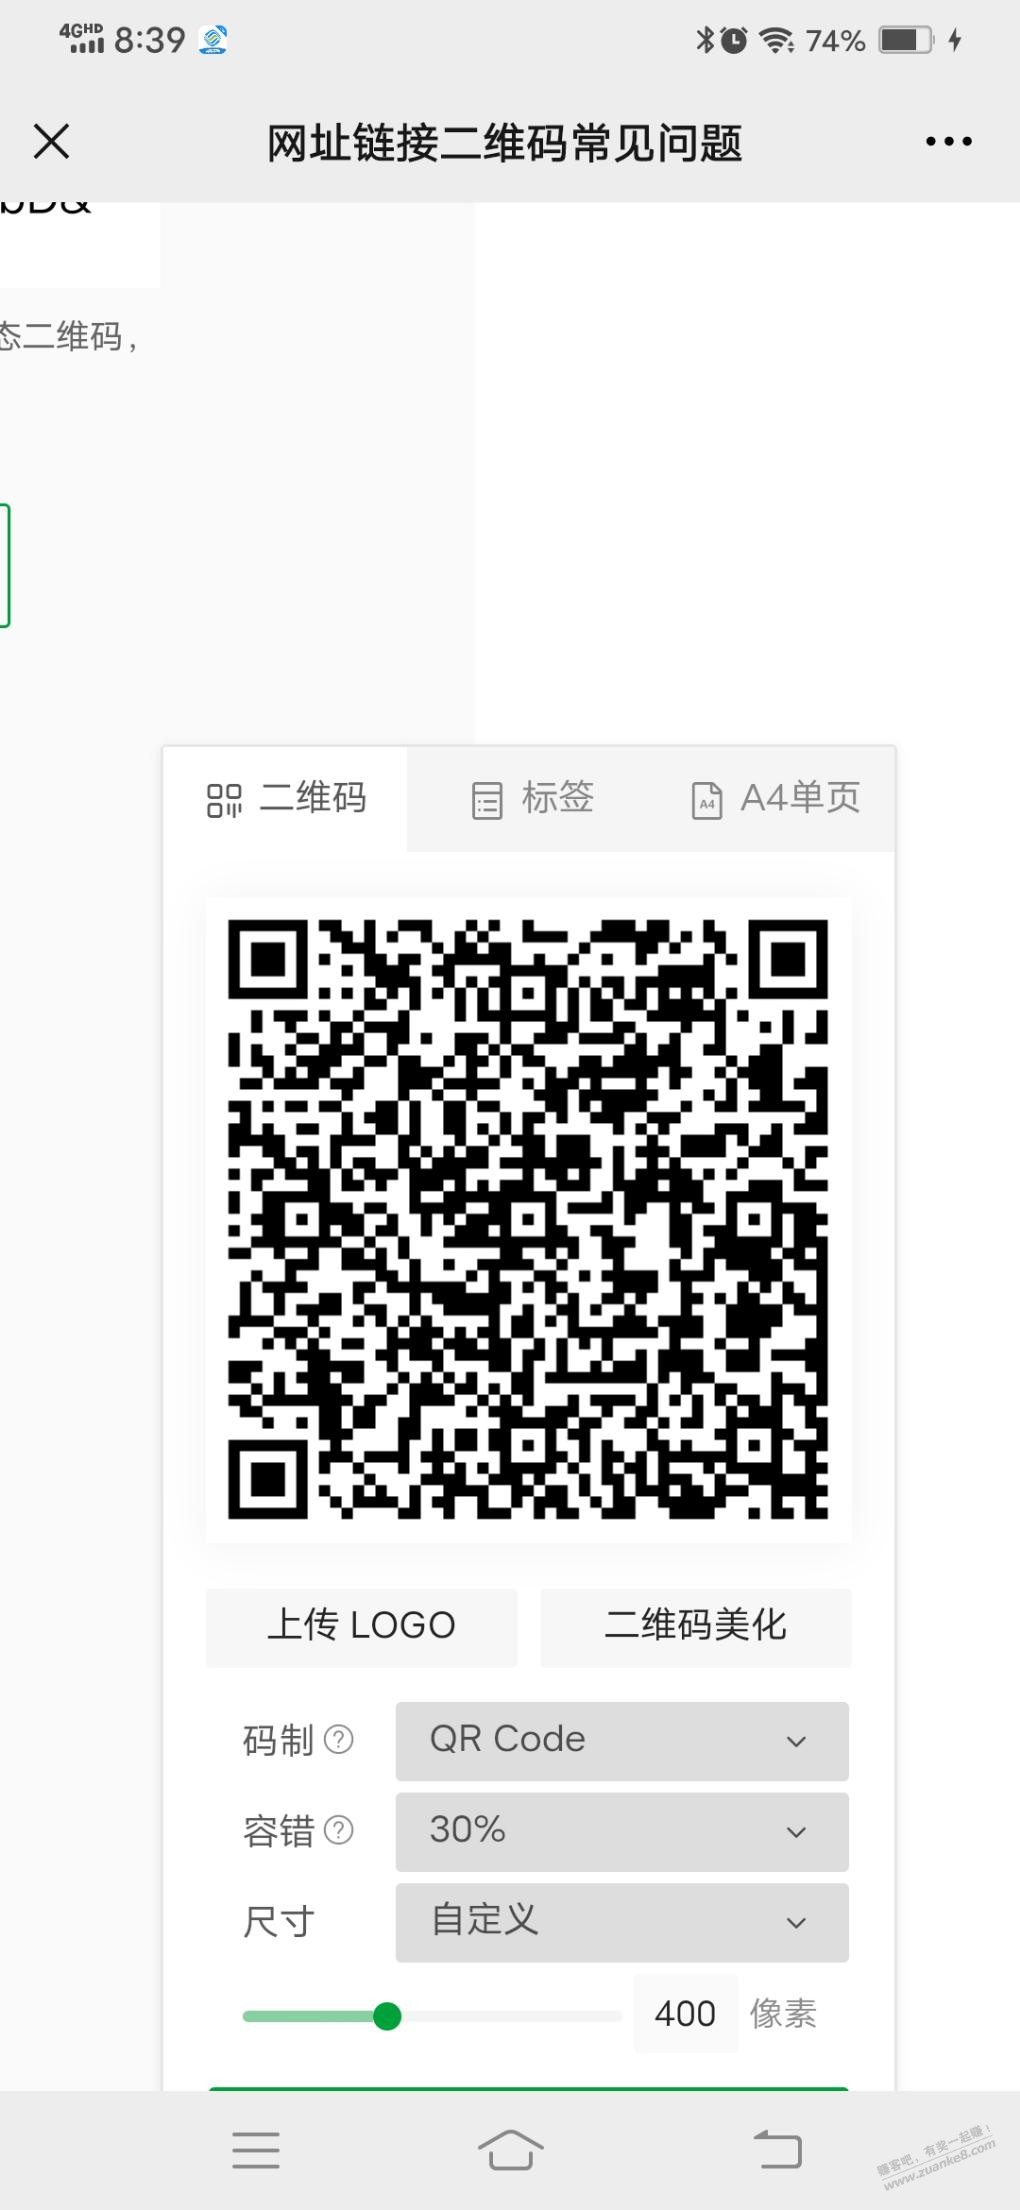 招行限长沙-惠小助(52huixz.com)